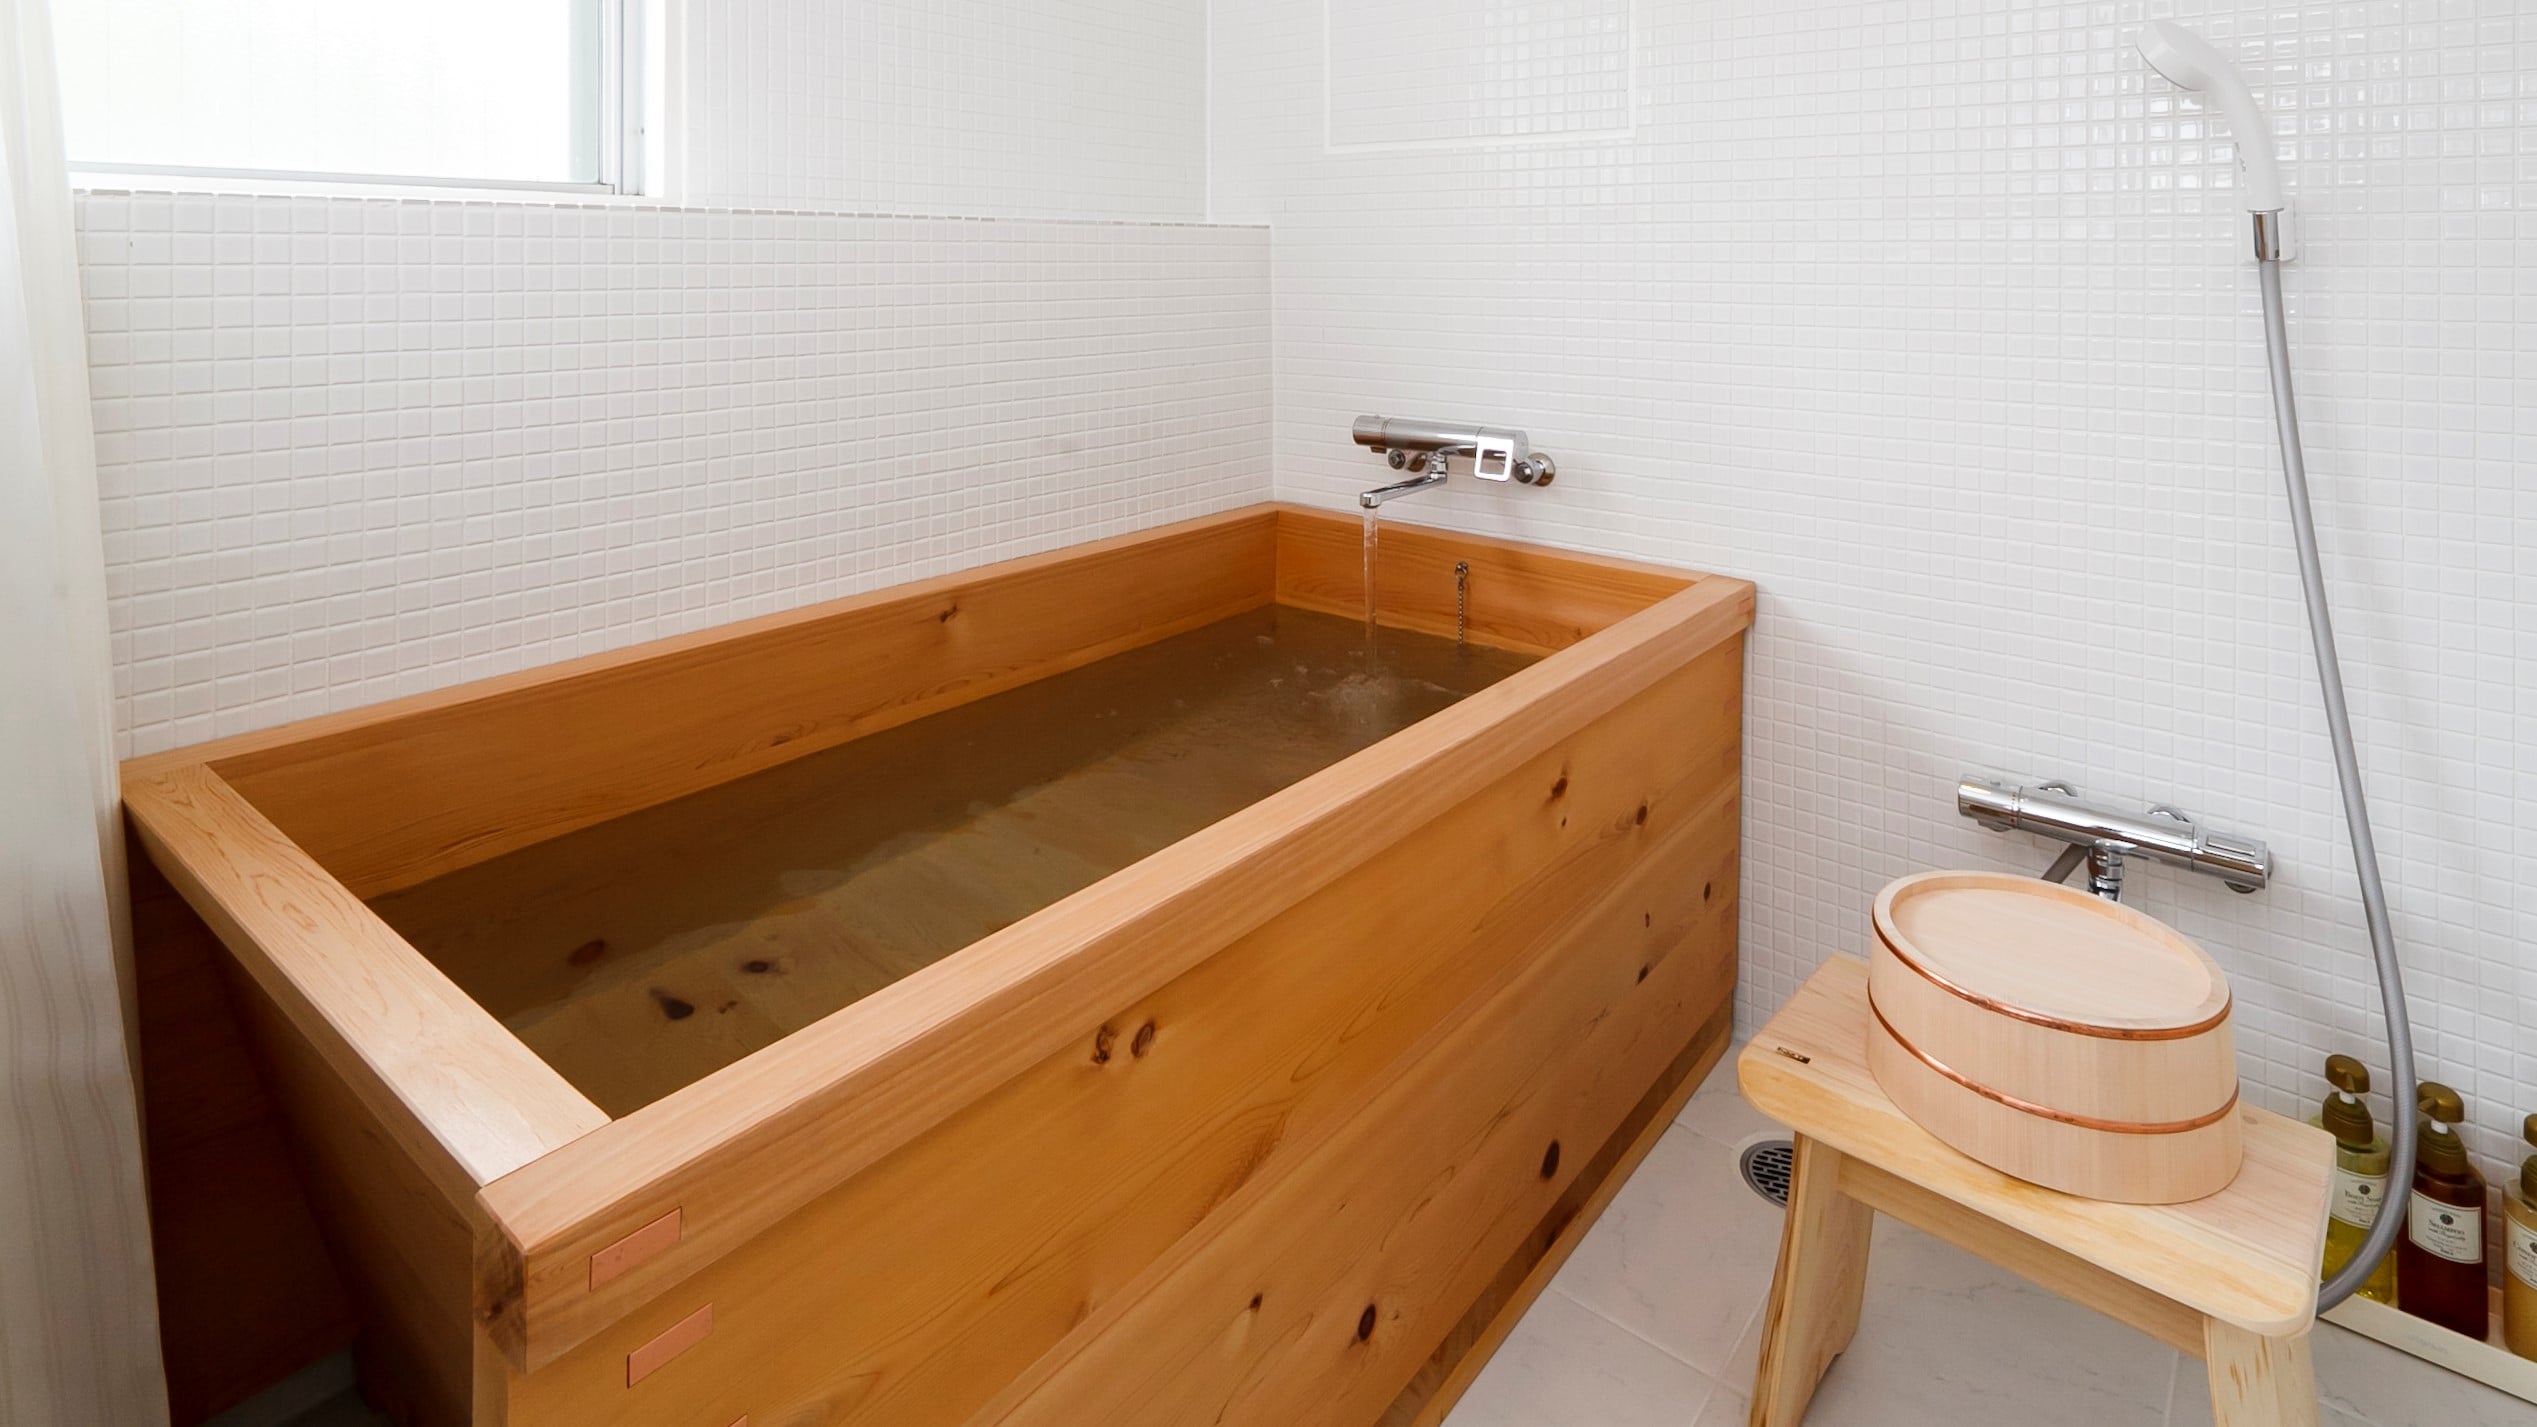 [海边客房] 16张榻榻米日式和西式房间桧木浴缸